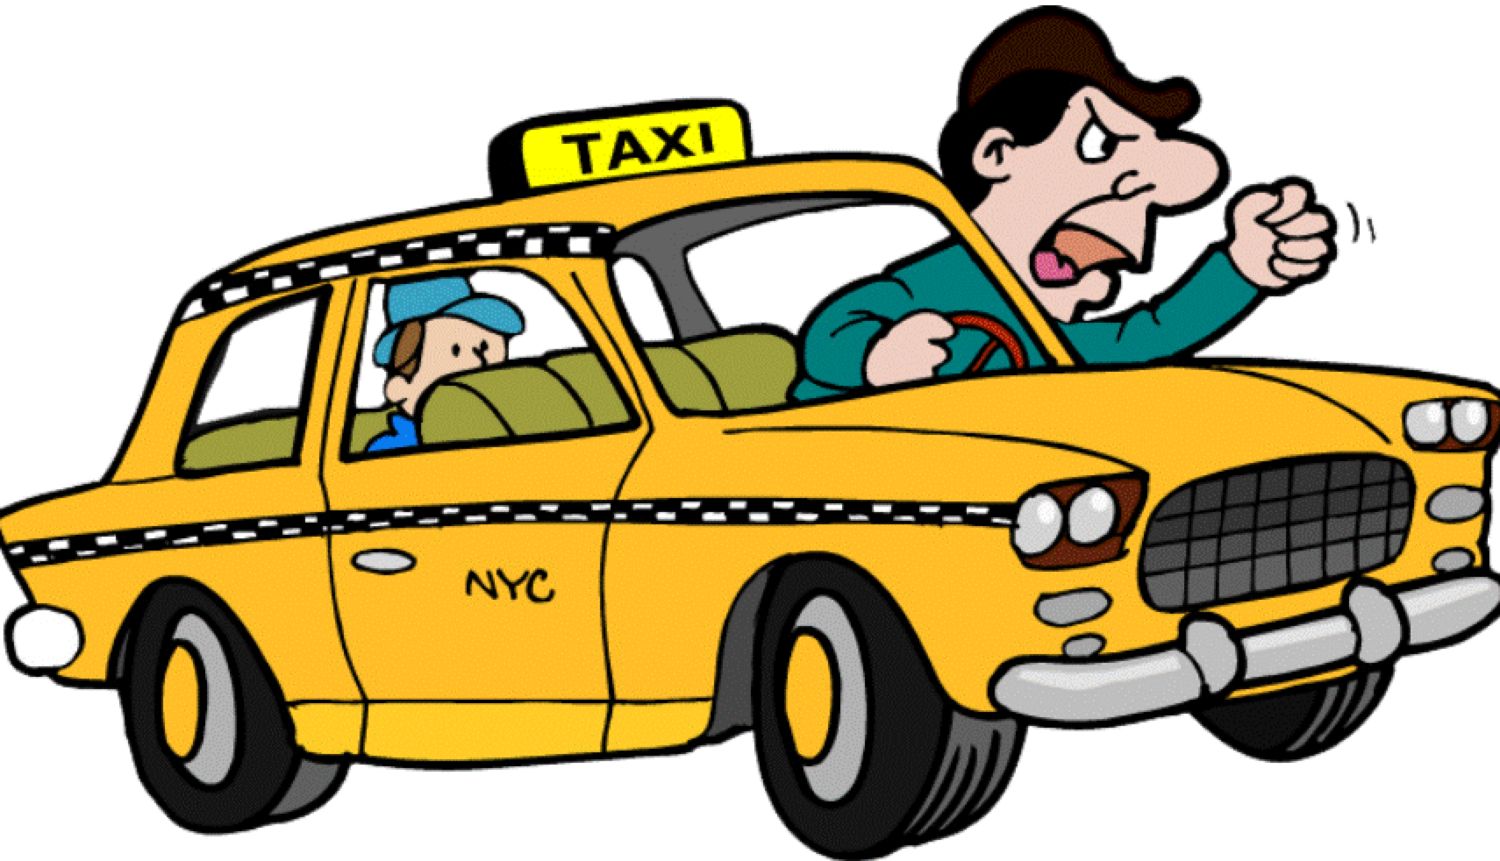 Bancurile care îi enervează pe taximetriști – Știți, n-ati putea să dați înapoi câțiva metri? – Leșini de râs!